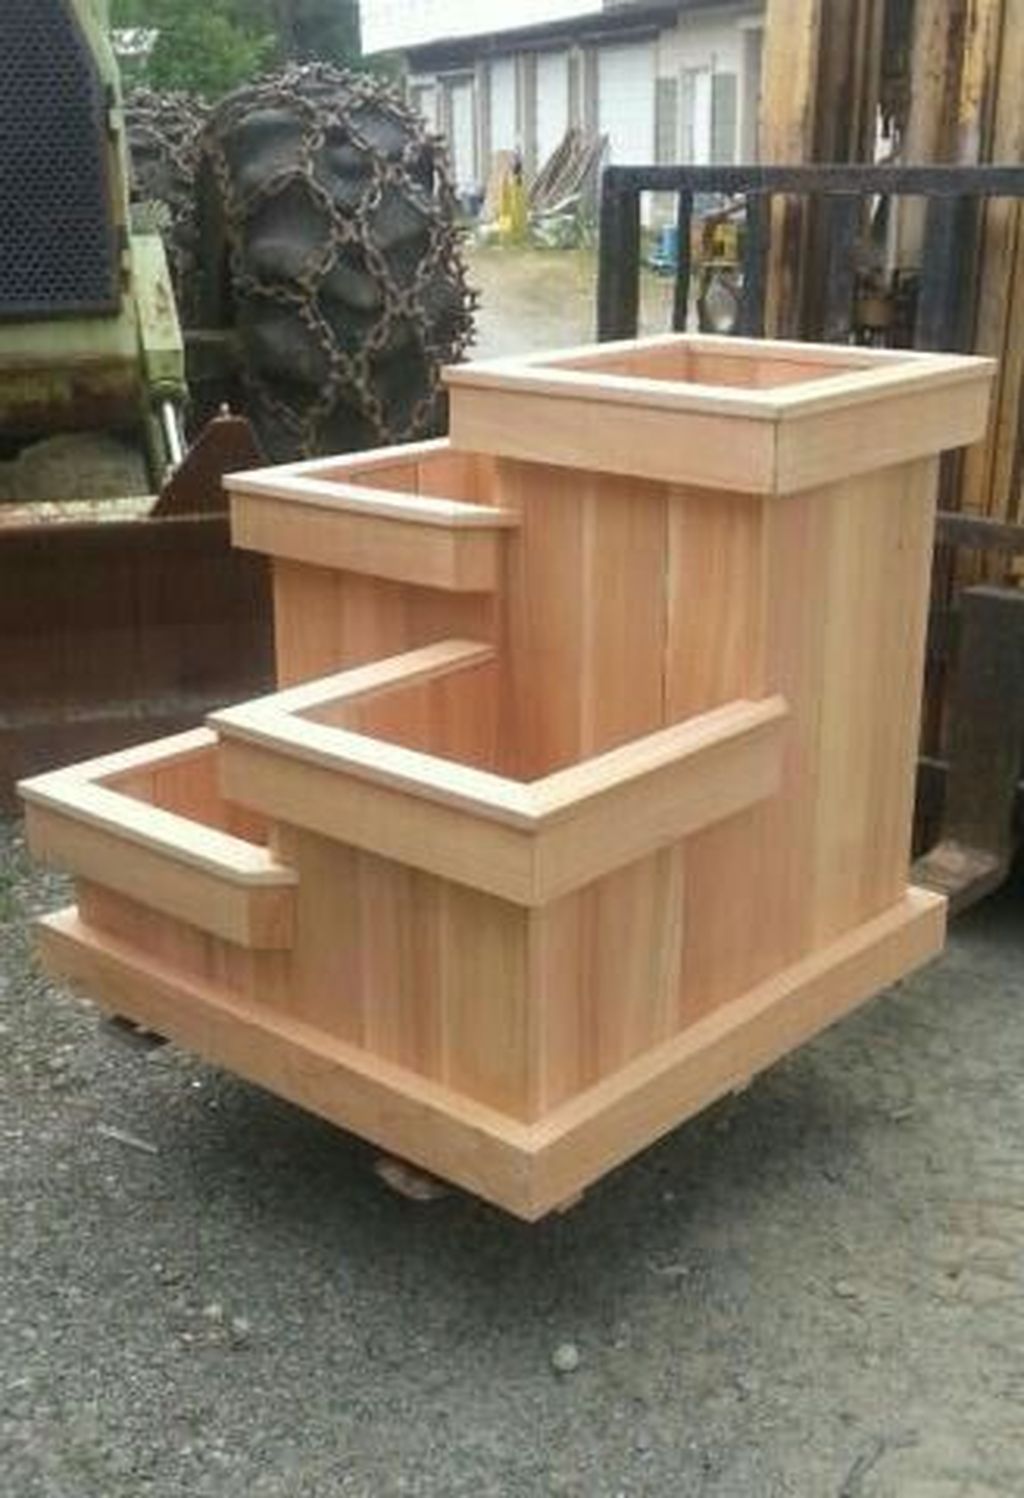 Rectangular Wooden Planter Boxes Garden Design Ideas